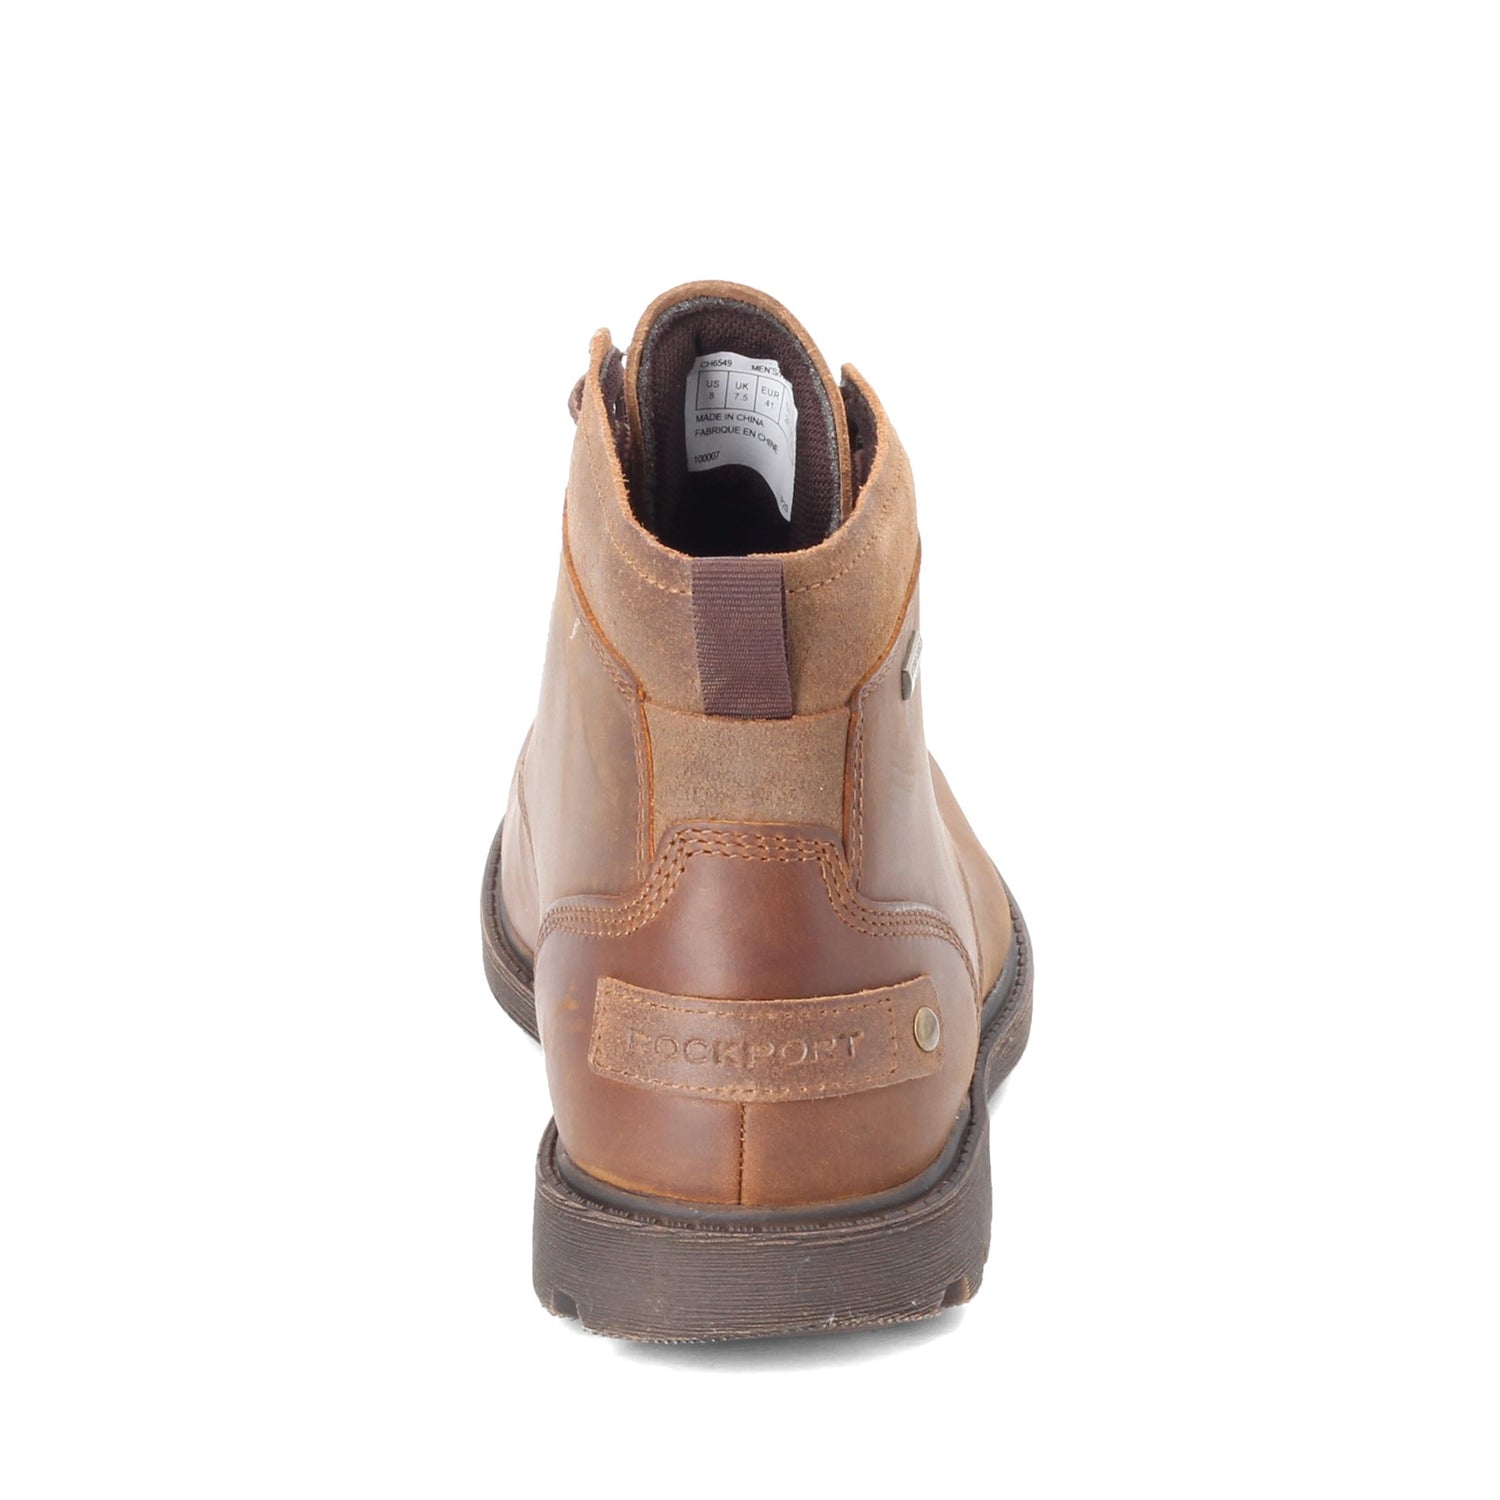 Peltz Shoes  Men's Rockport Rugged Bucks 2 Chukka Boot TAN CH6549